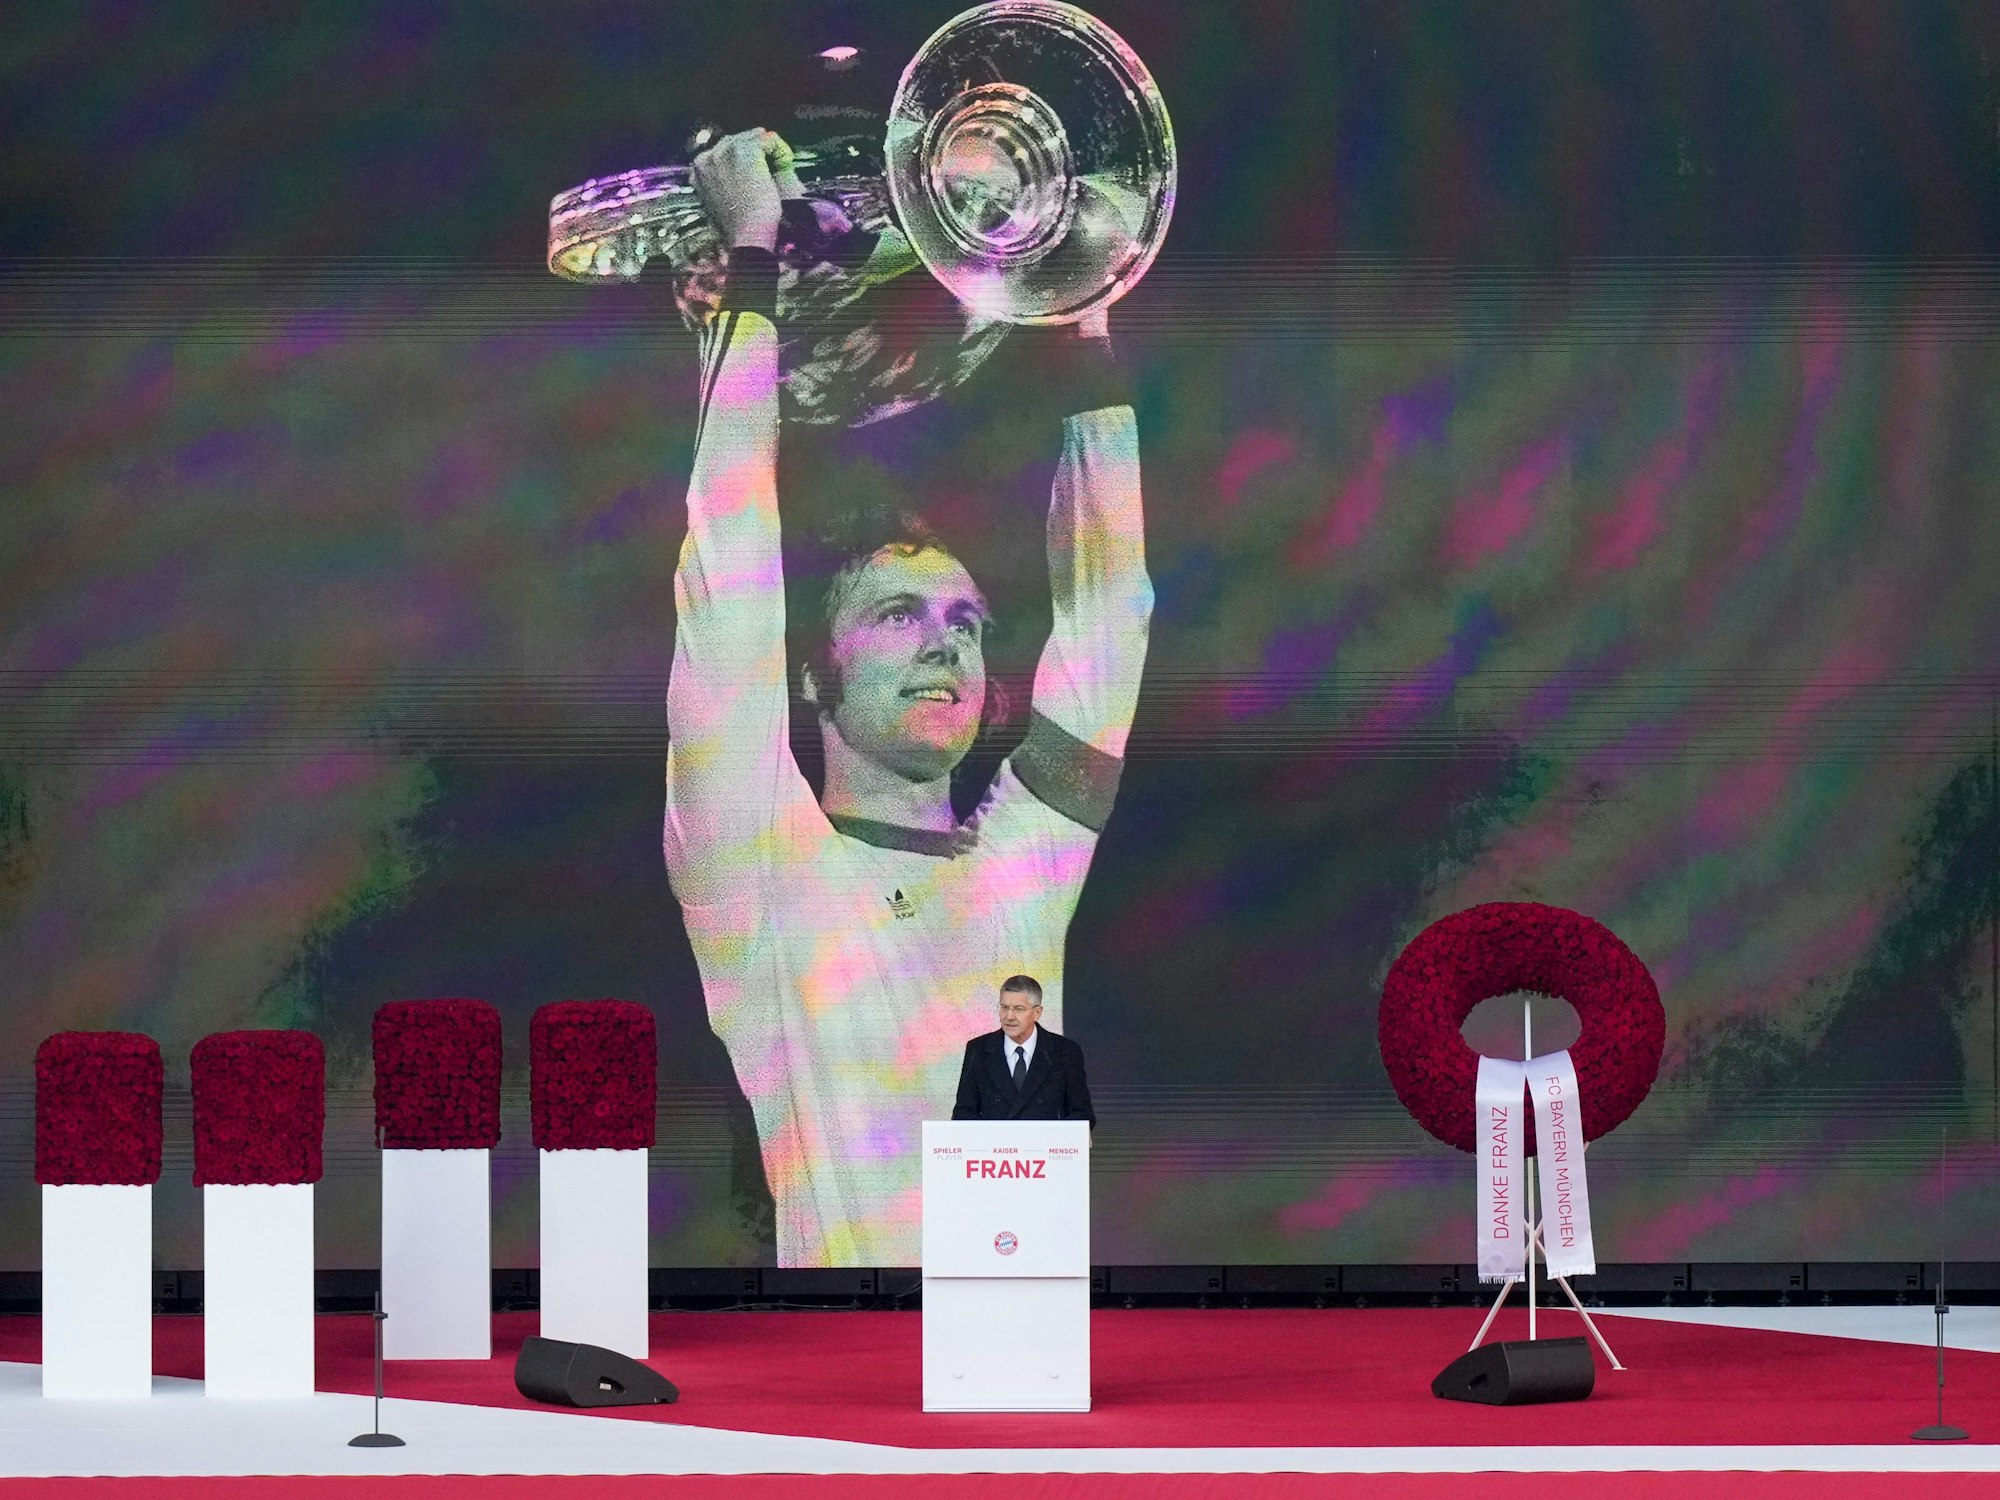 Bayern Münchens Vereinspräsident Herbert Hainer hält bei der Gedenkfeier für Franz Beckenbauer eine Rede. Im Hintergrund ist ein überlebensgroßes Bild von Beckenbauer mit Pokal.